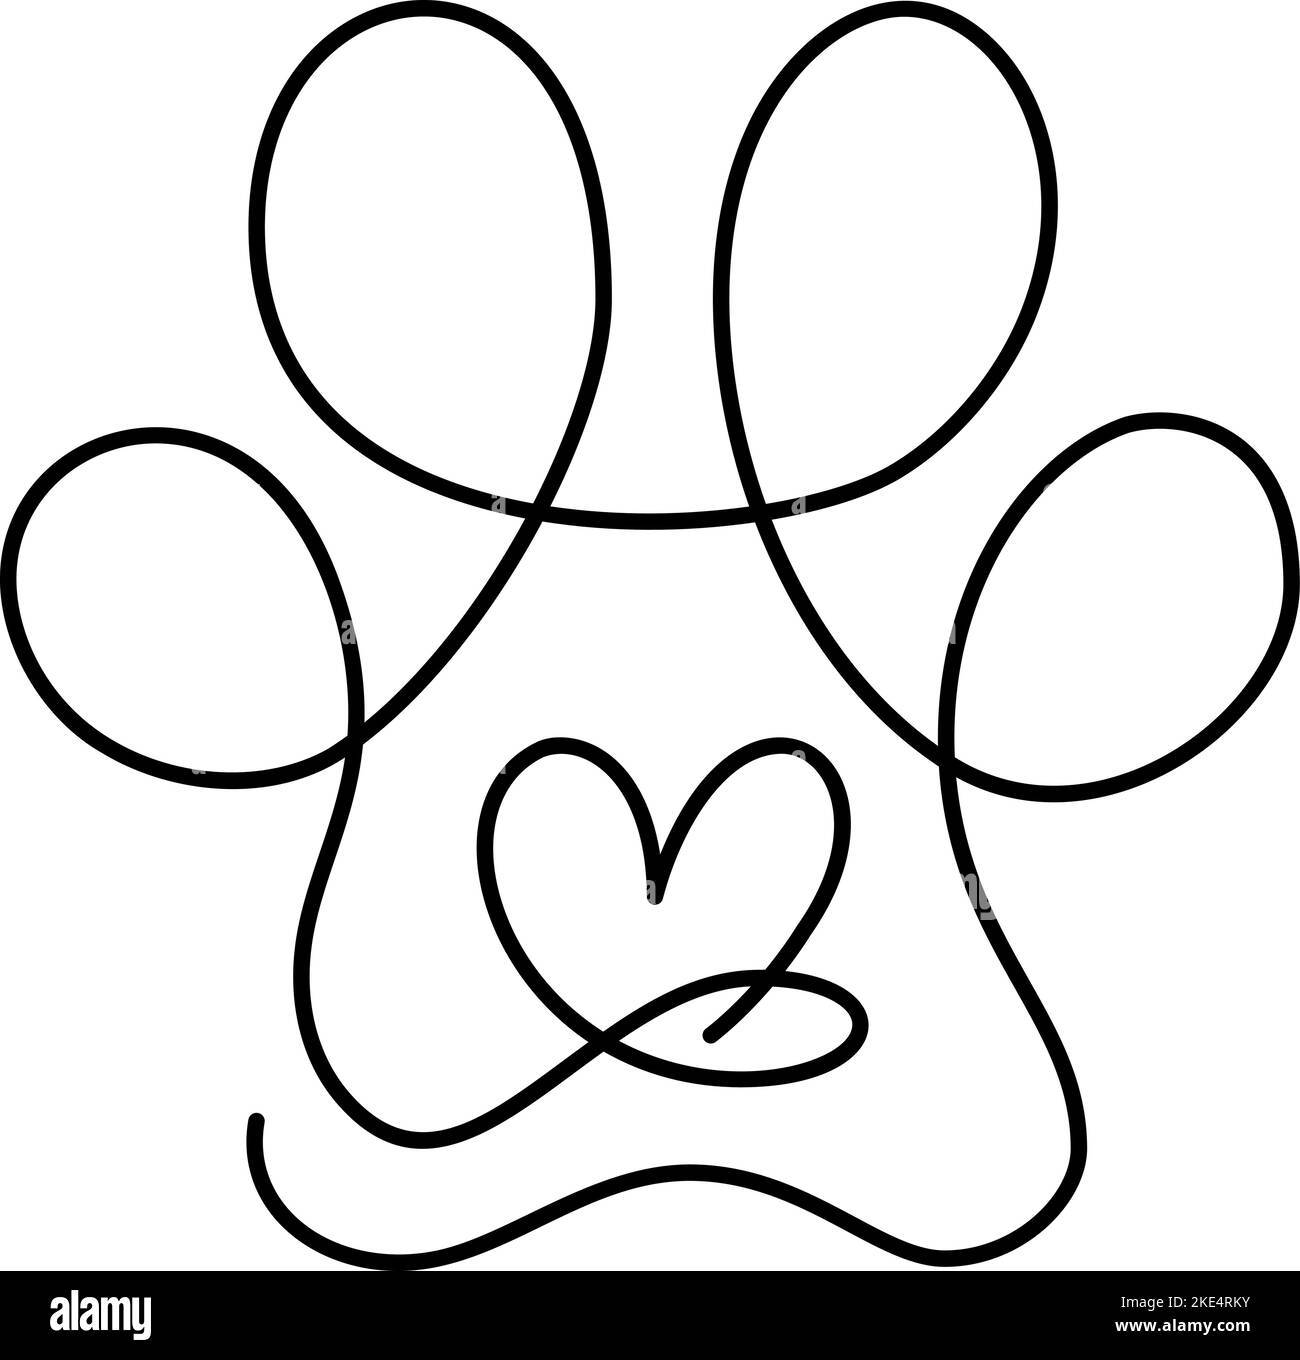 Herz mit Katze oder Hund Pfote Katze Fußabdruck in kontinuierlichen eine Linie Zeichnung Logo. Minimal Line Art. Tier im Herzen. PET Love-Konzept Stock Vektor